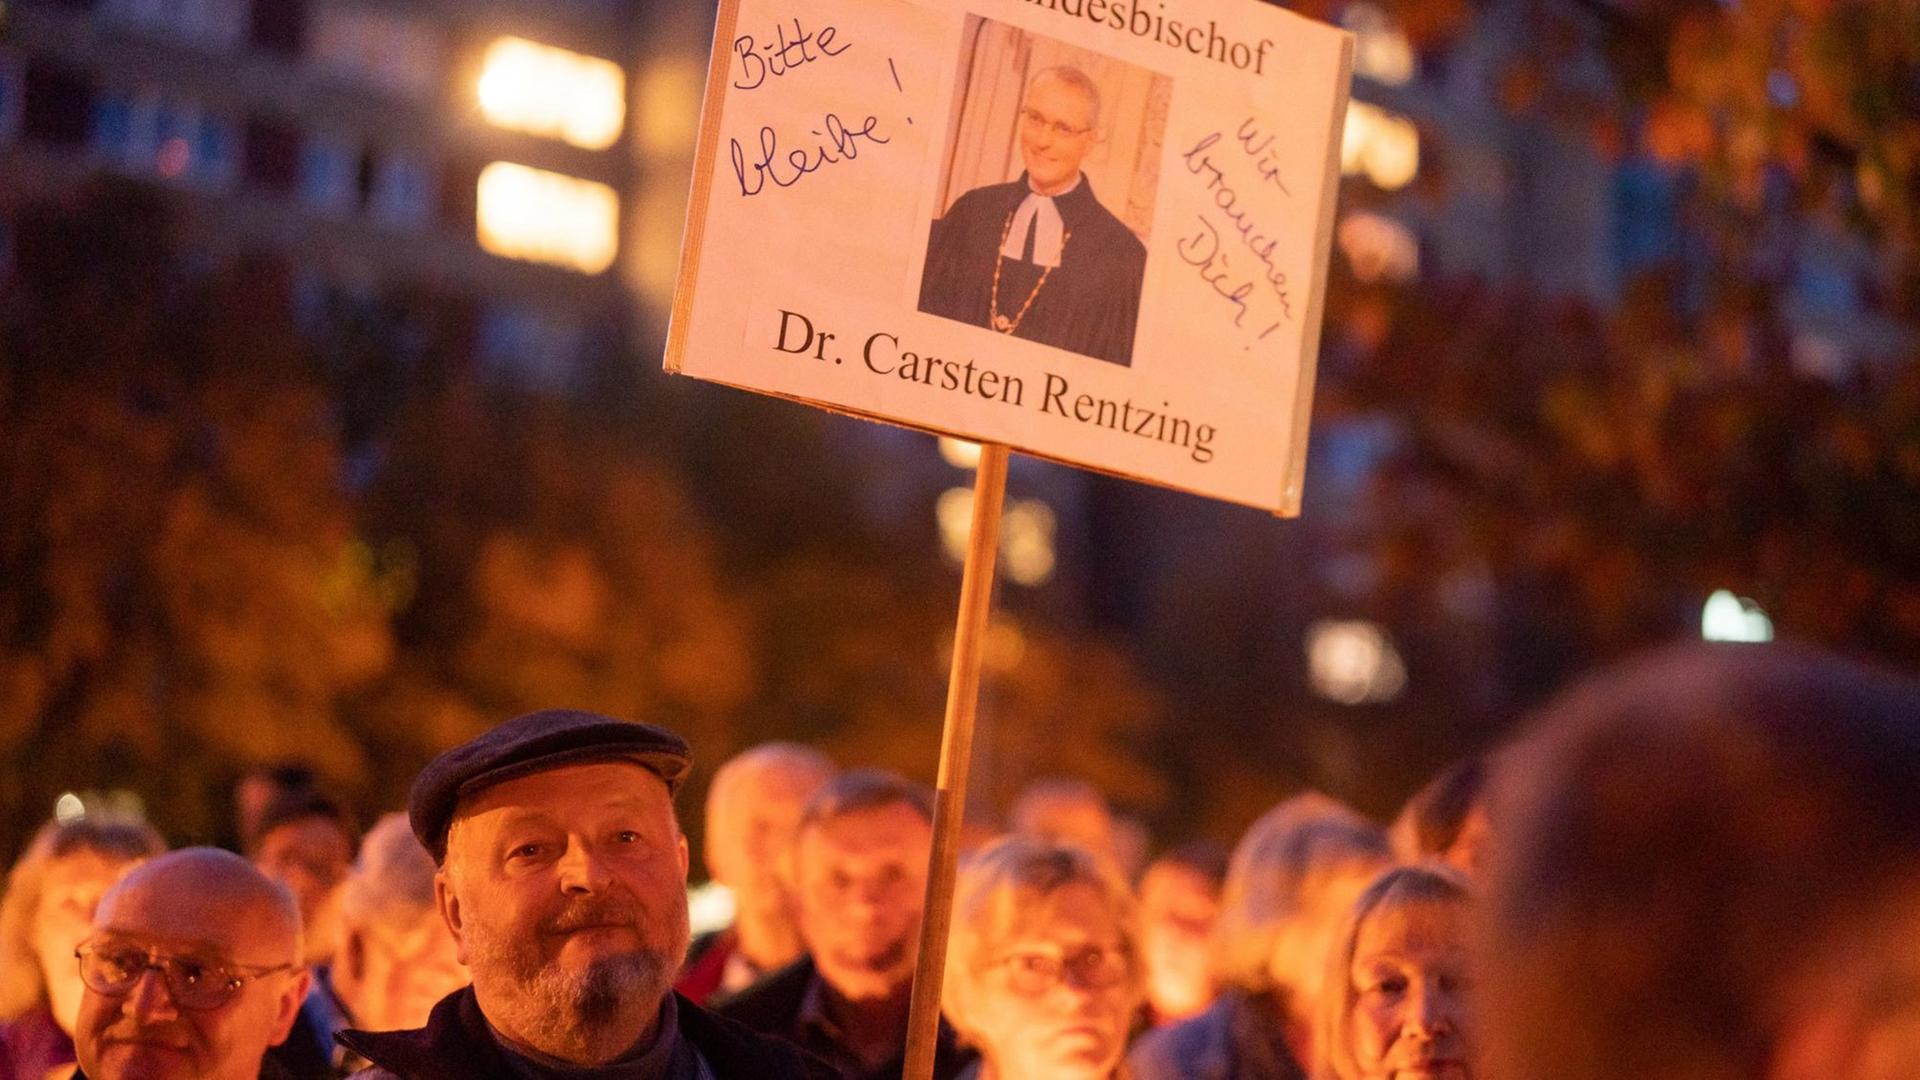 Ein Demonstrierender hält ein Schild mit einem Porträt von Carsten Rentzing und der Aufschrift "Bitte bleibe!"